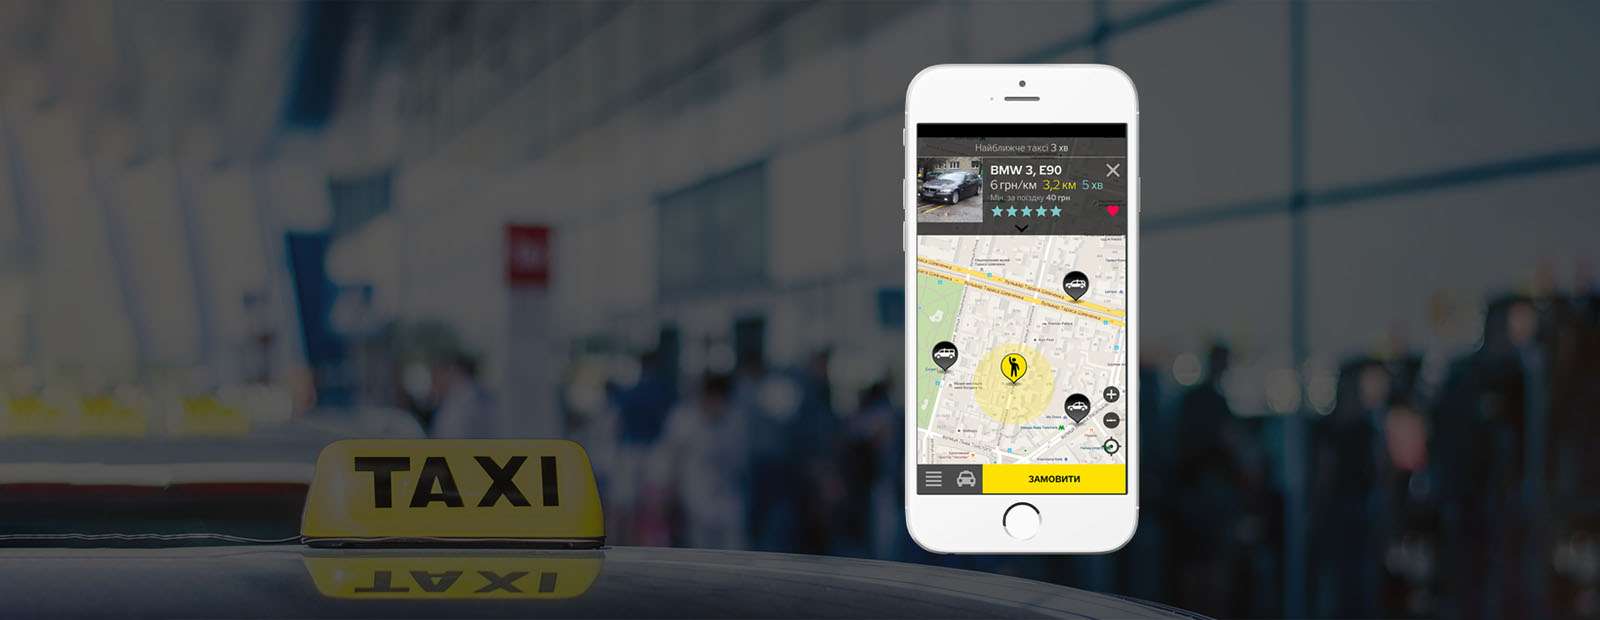 Служби таксі з хорошими цінами на поїздку в одному додатку